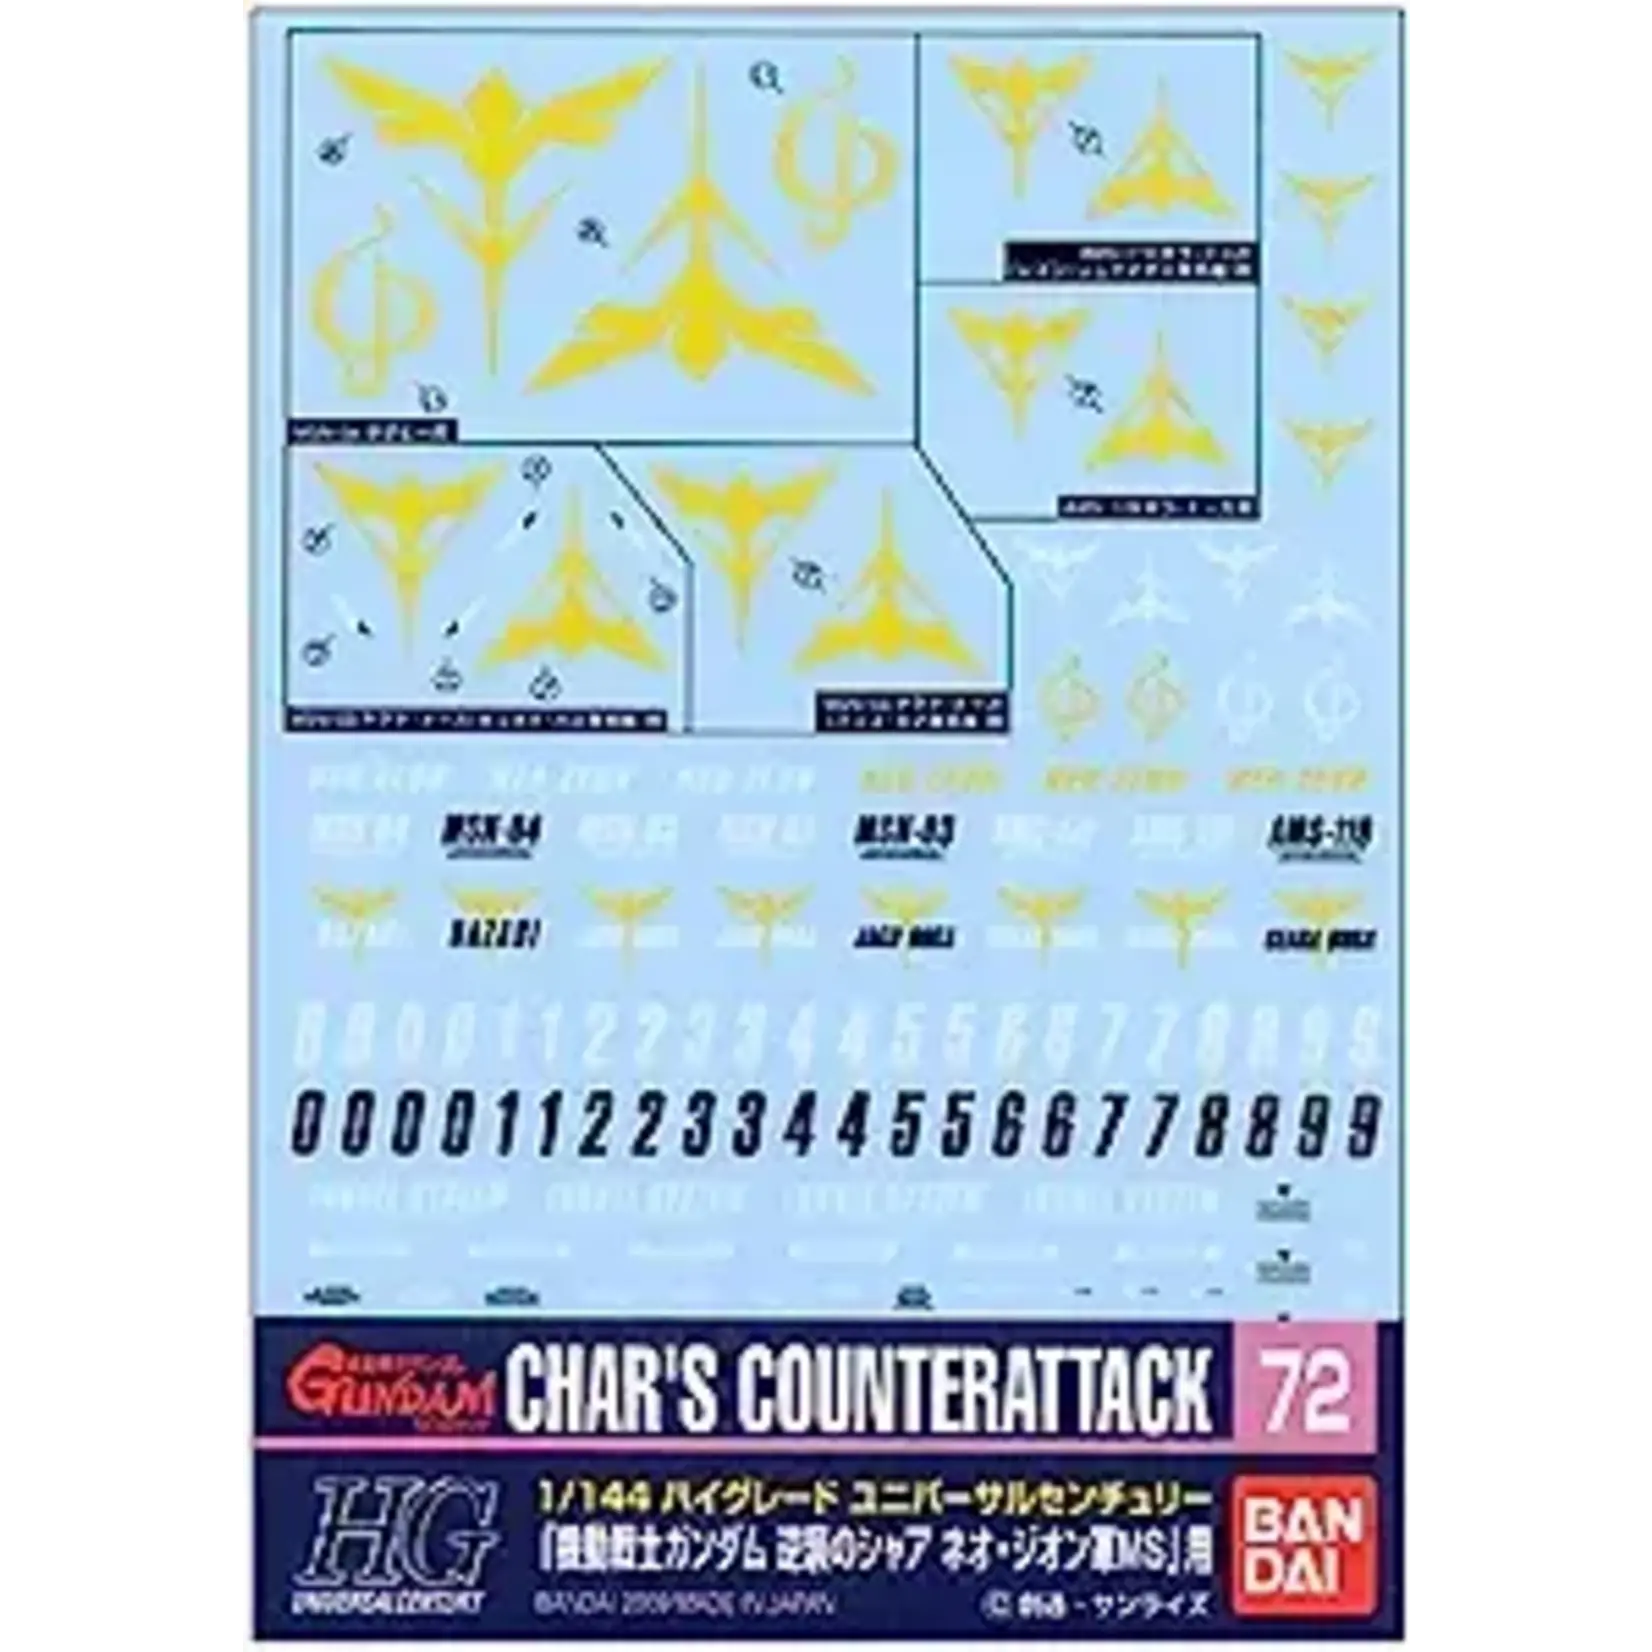 Bandai Bandai 2076870  GD-72 1/144 Char's Counterattack ZEON VER. "Char's Counterattack" Decal